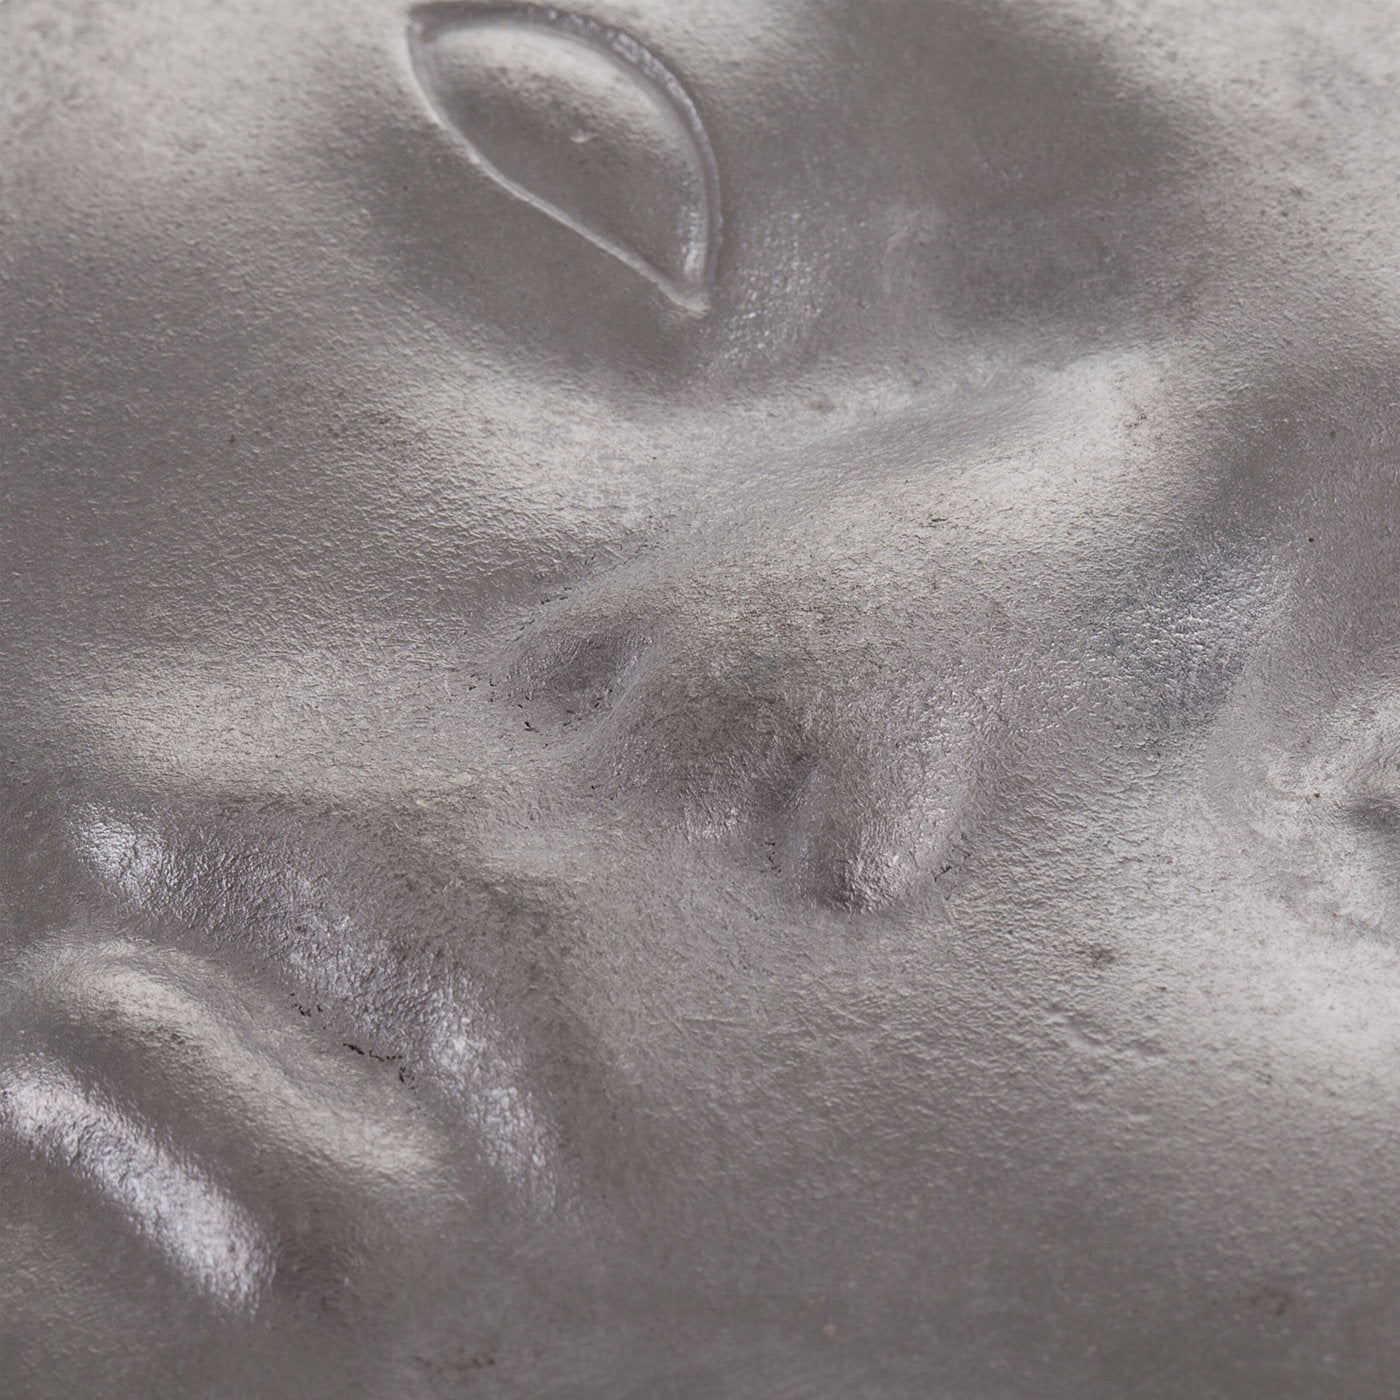 Sculpture de fragments de visage humain - Vue alternative 3